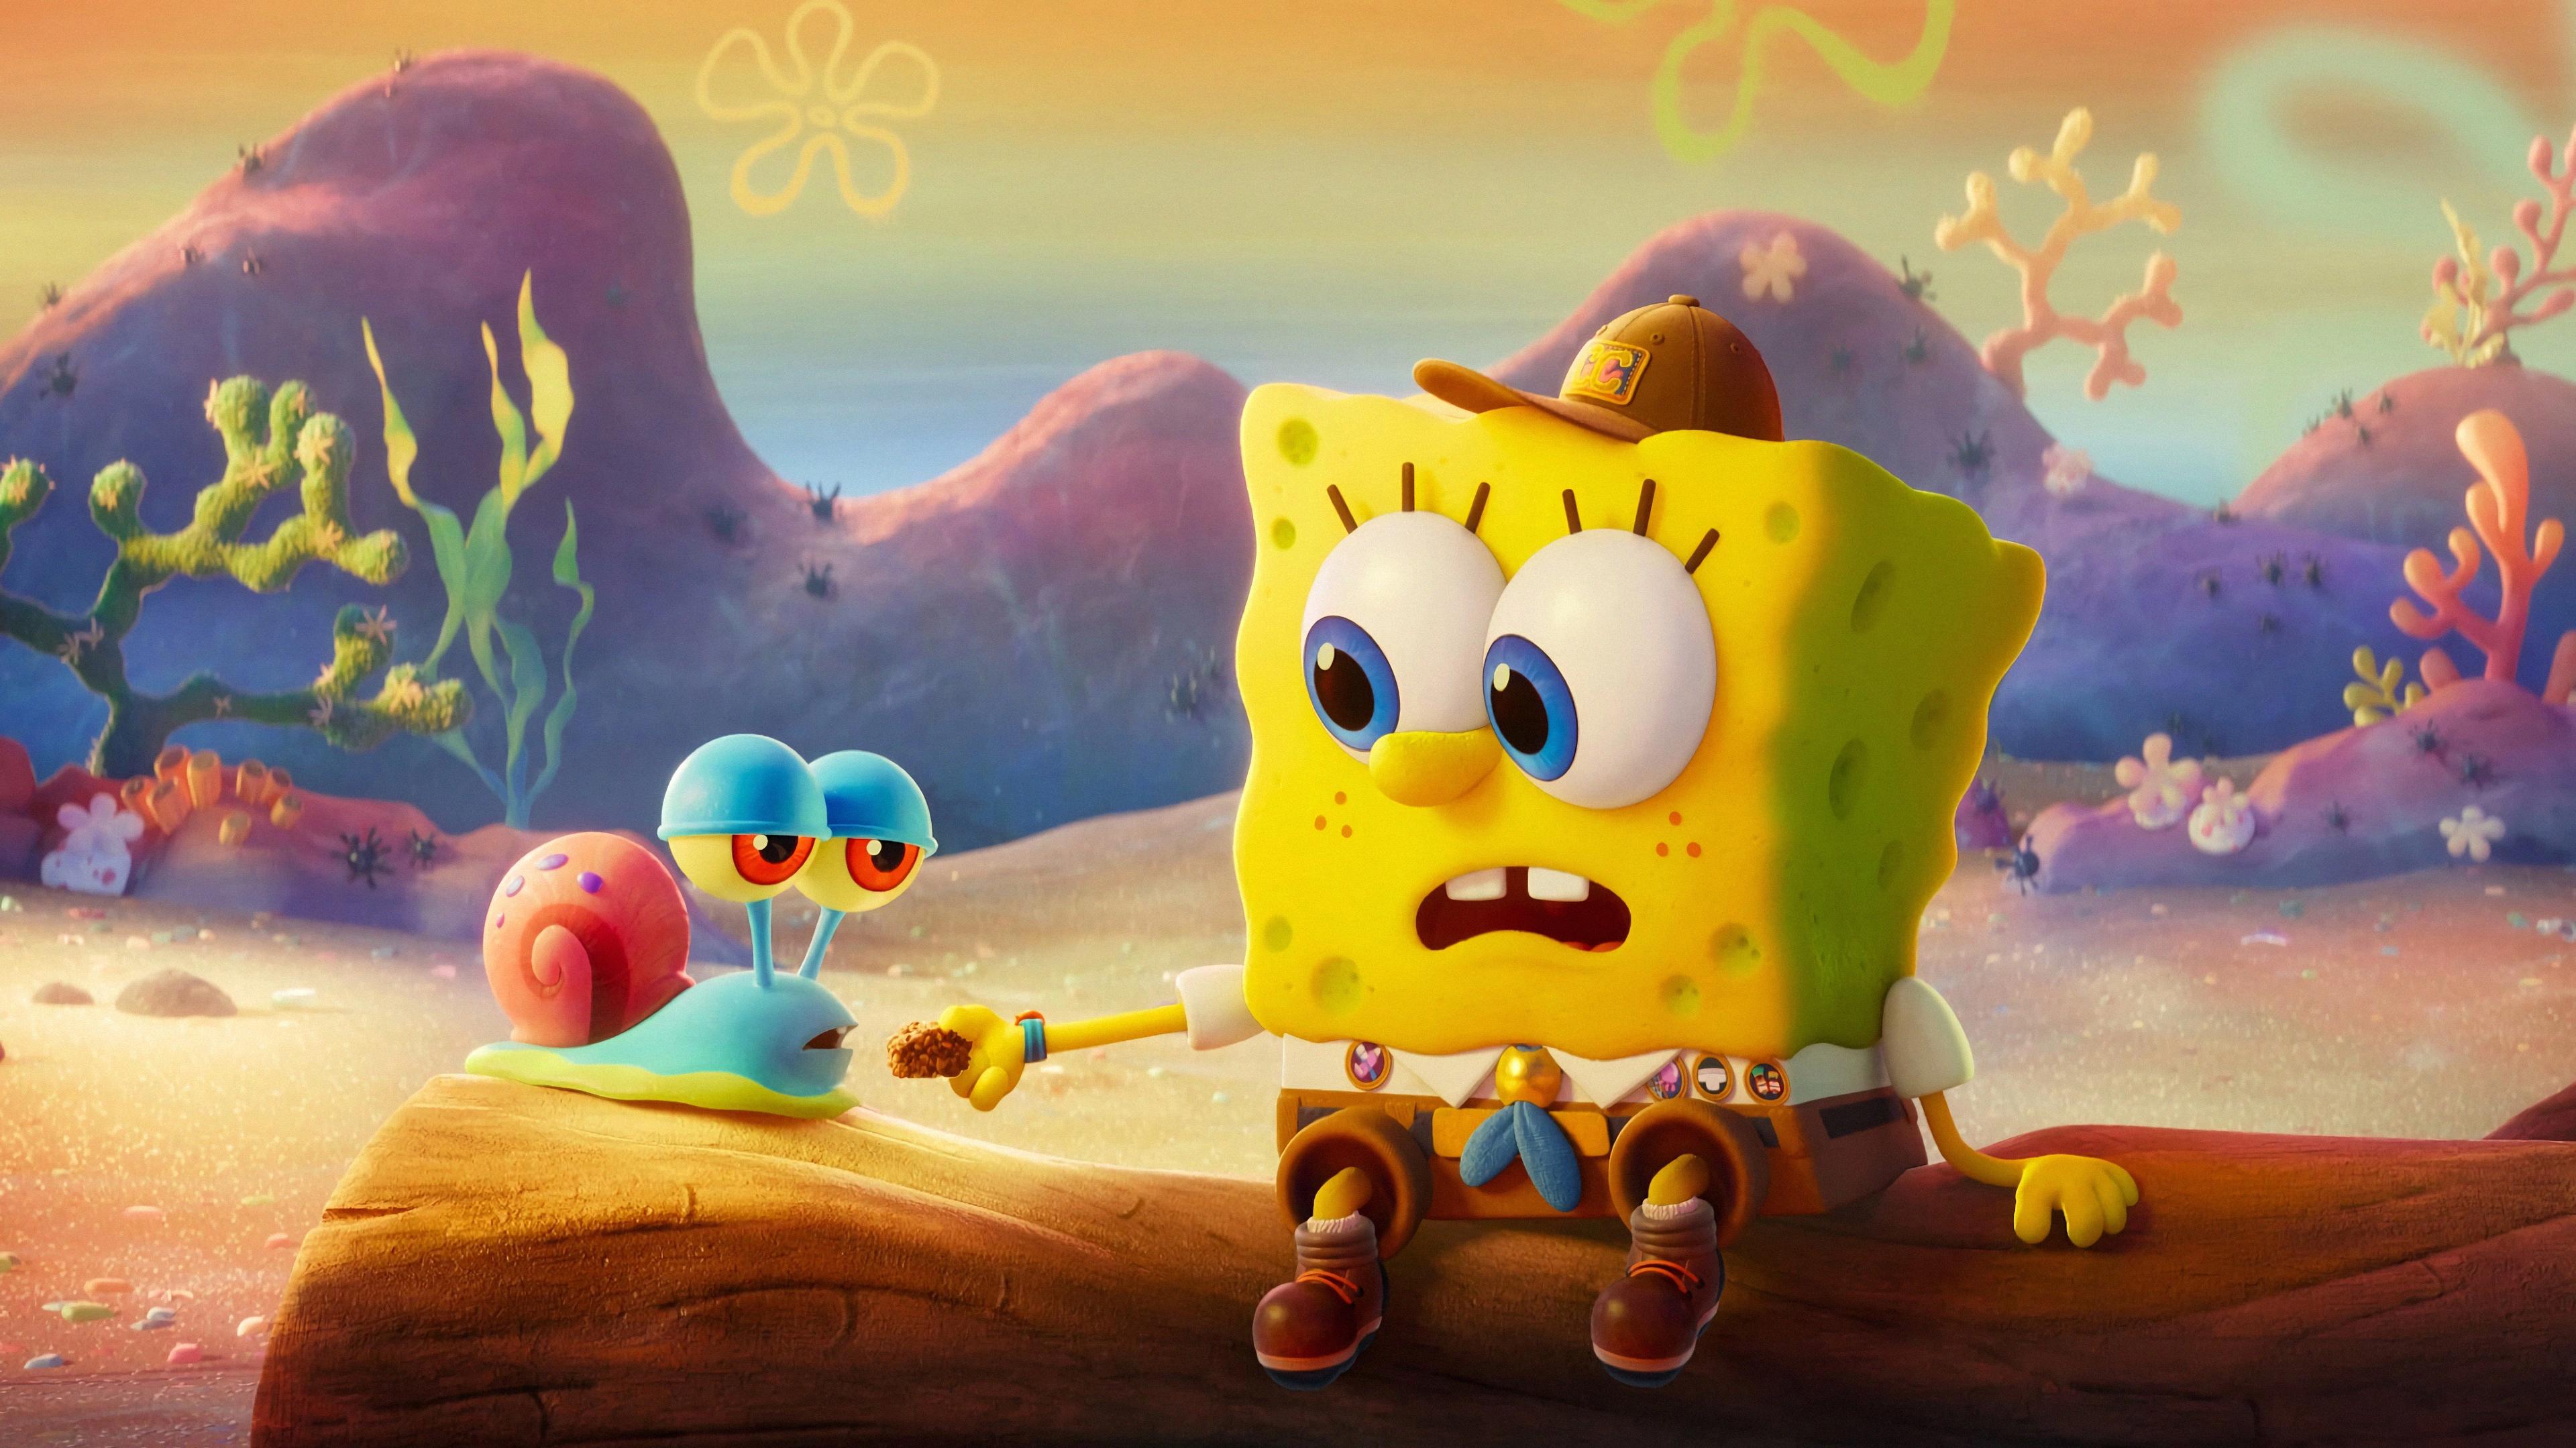 Spongebob And Gary Cute 4k HD Cartoons Wallpaper Image